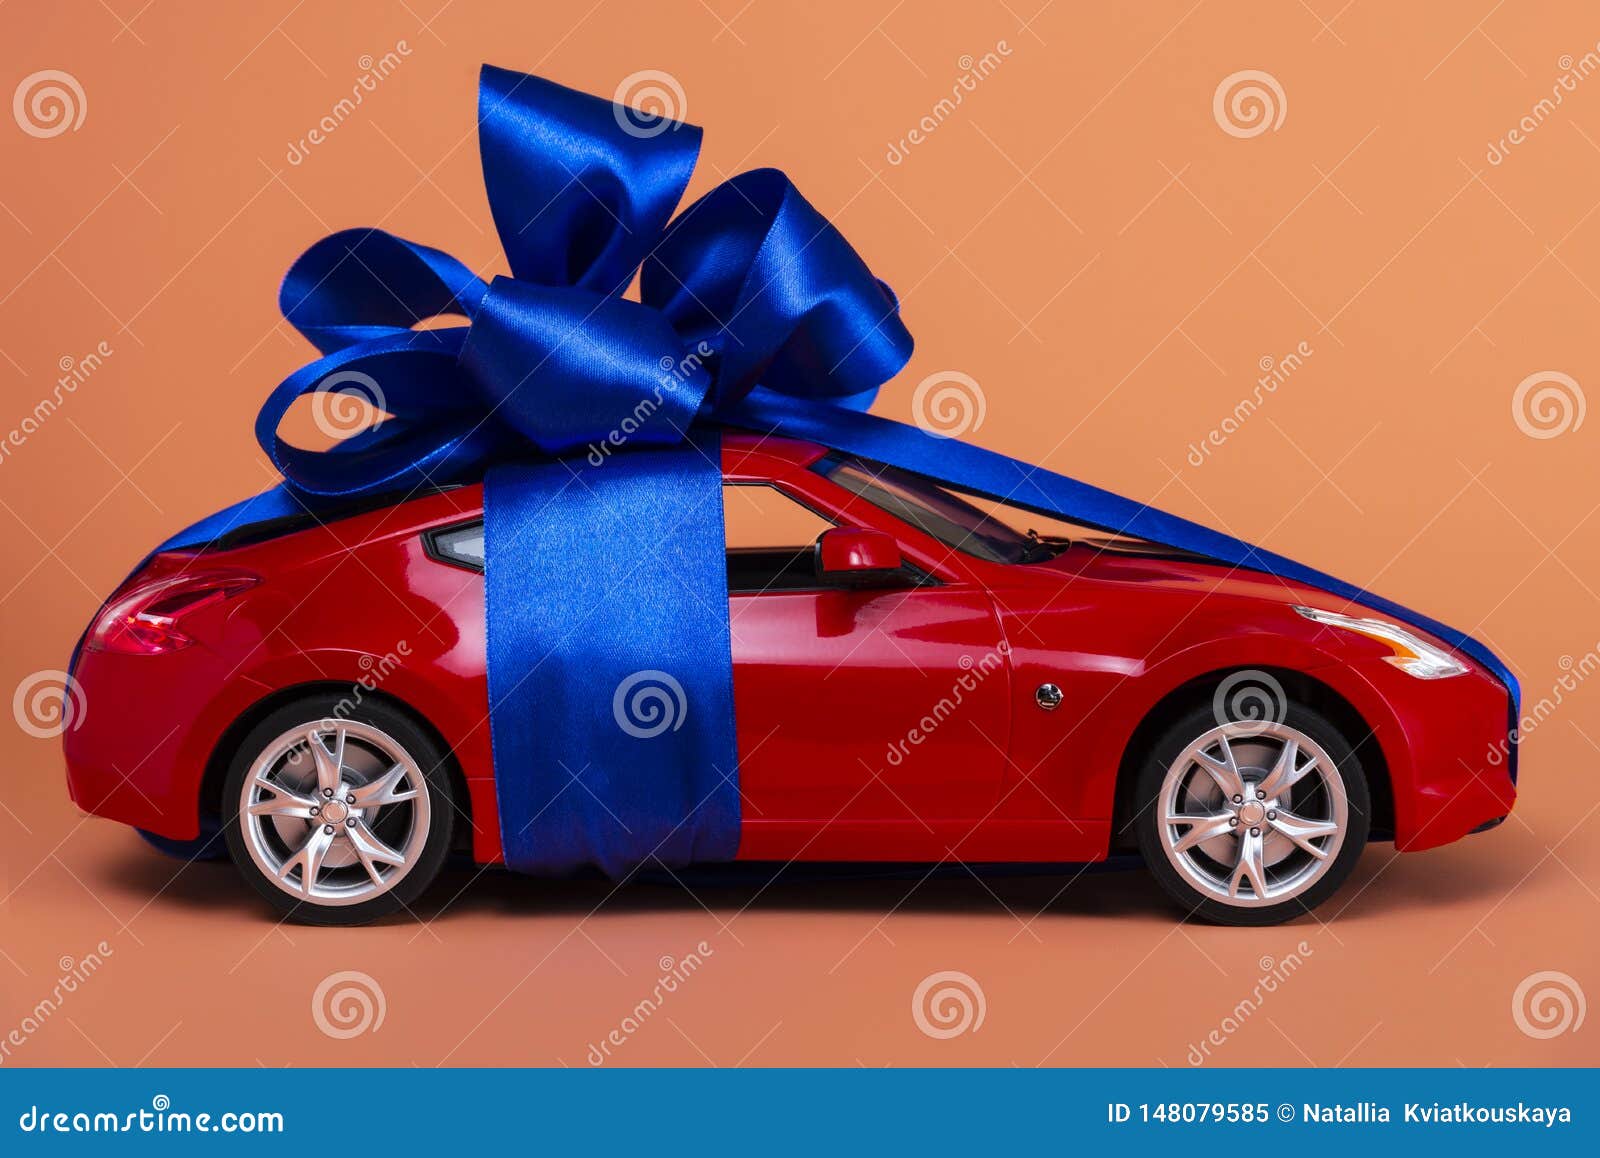 Neues Rotes Auto Mit Einem Blauen Bogen Als Geschenk Auf Einem